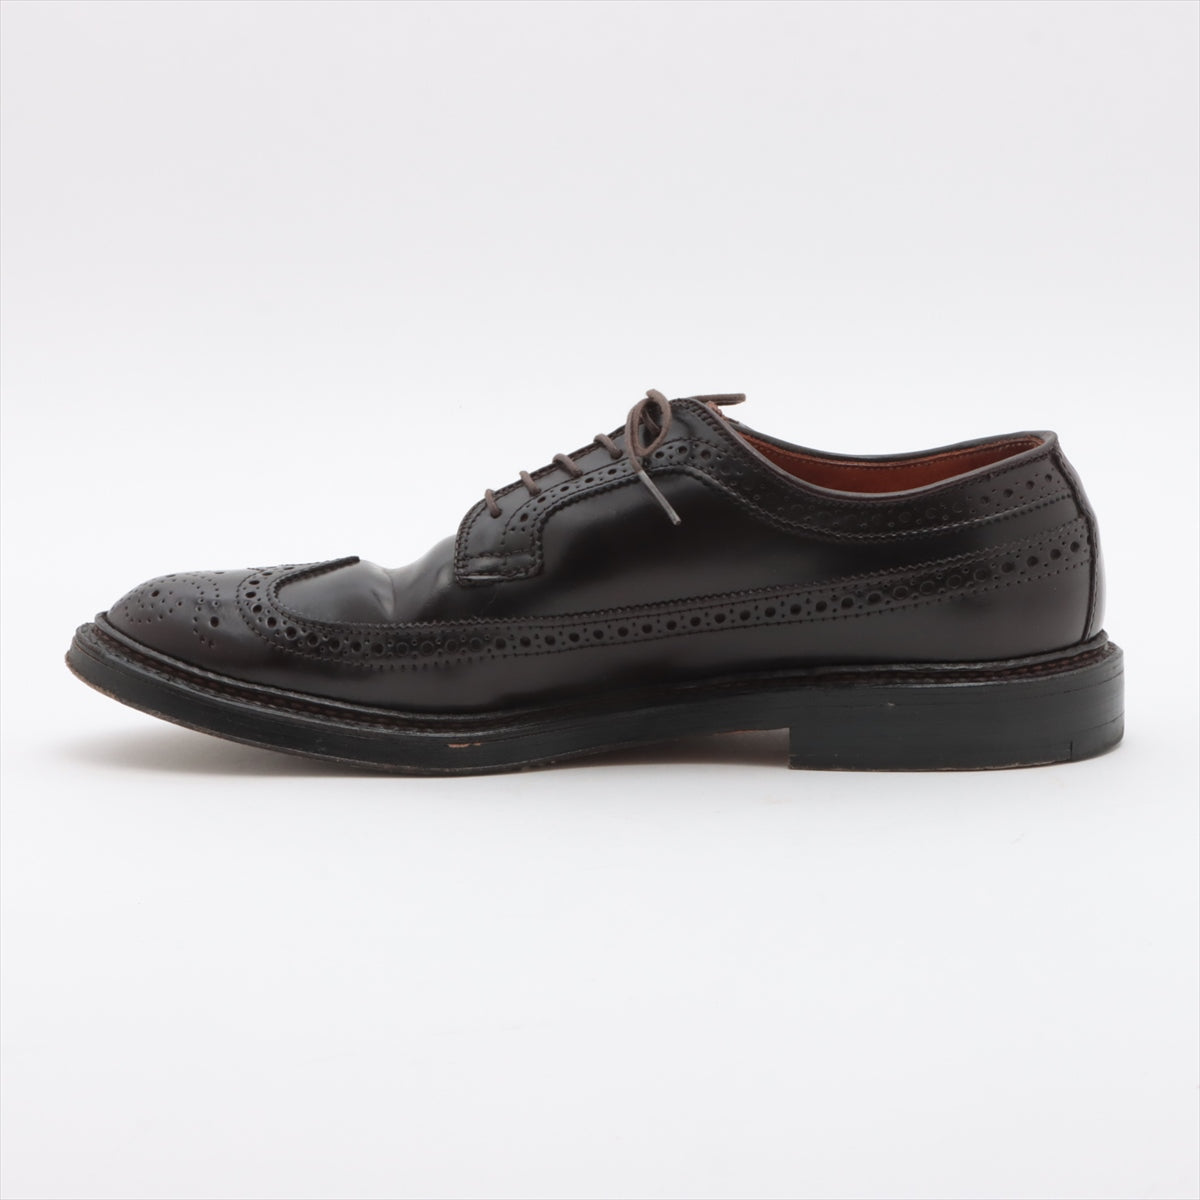 Alden Cordovan Leather shoes 8 1/2 Men's Burgundy 975 wingtip